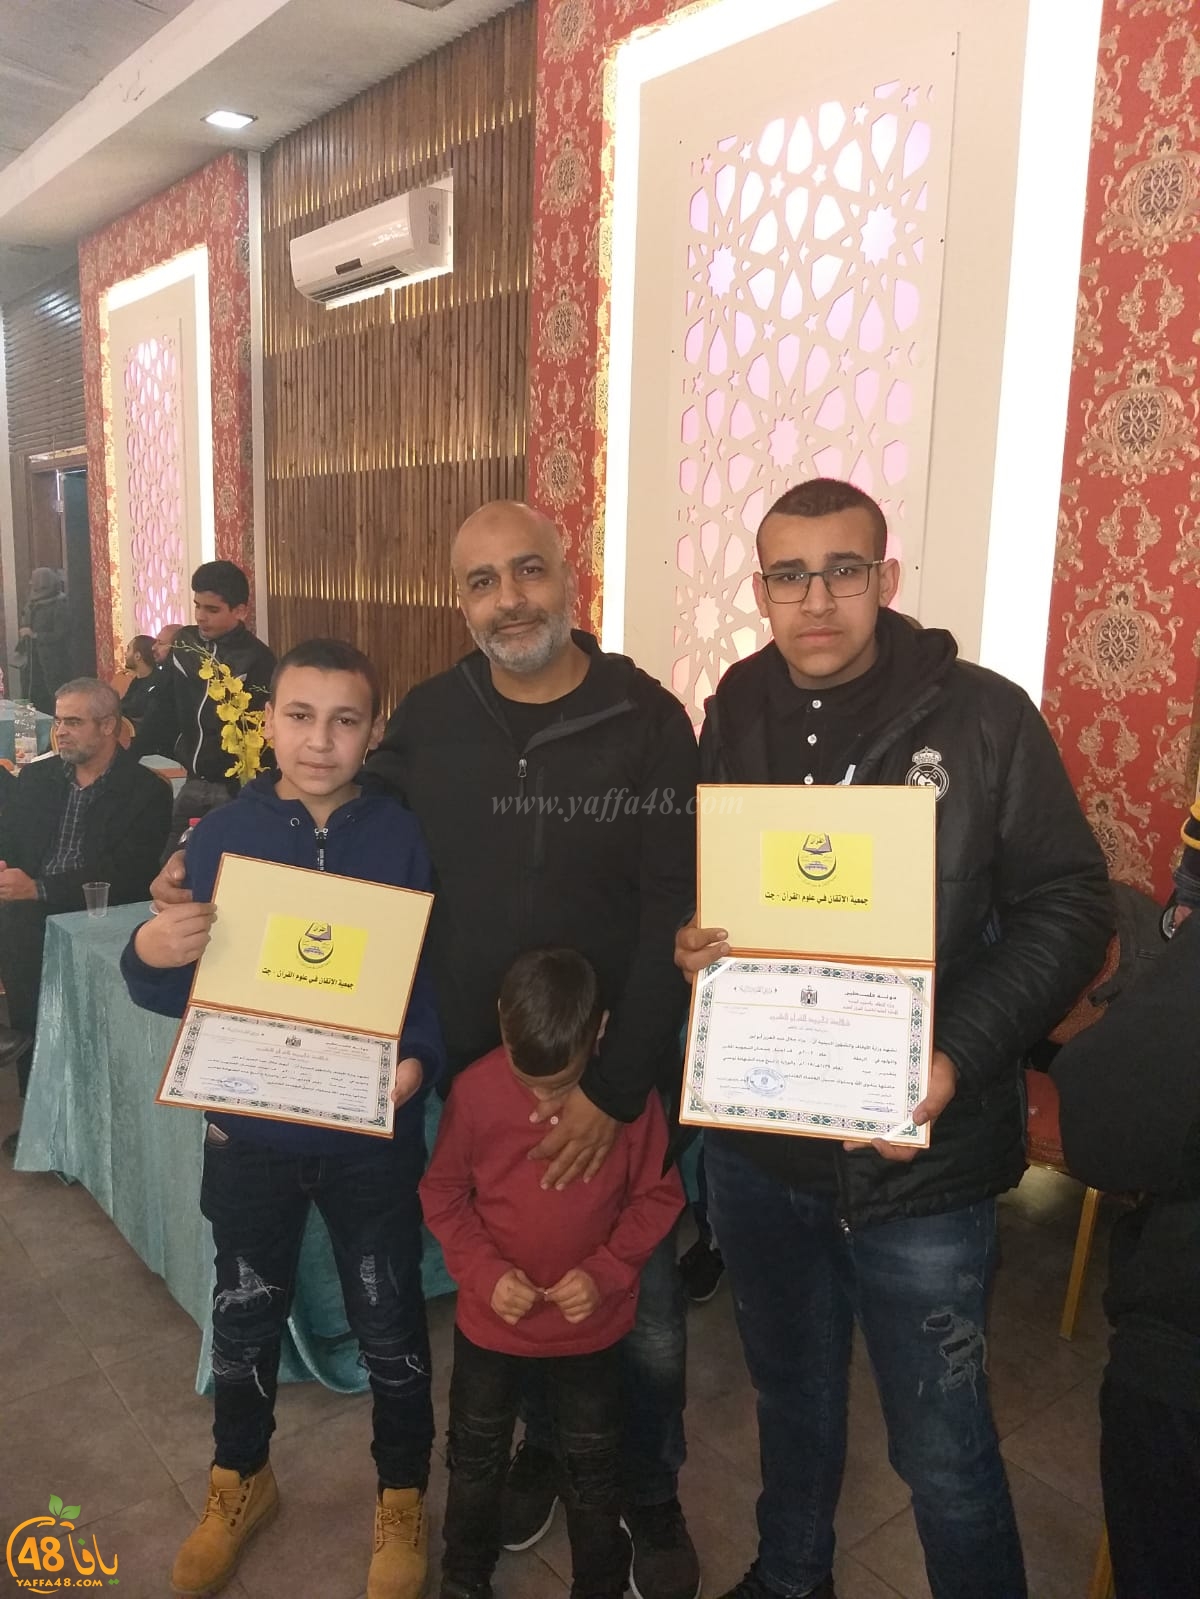  جمعية الزيتونة بالرملة تحتفل بتخريج 11 طالباً مجازاً في قراءة القرآن الكريم